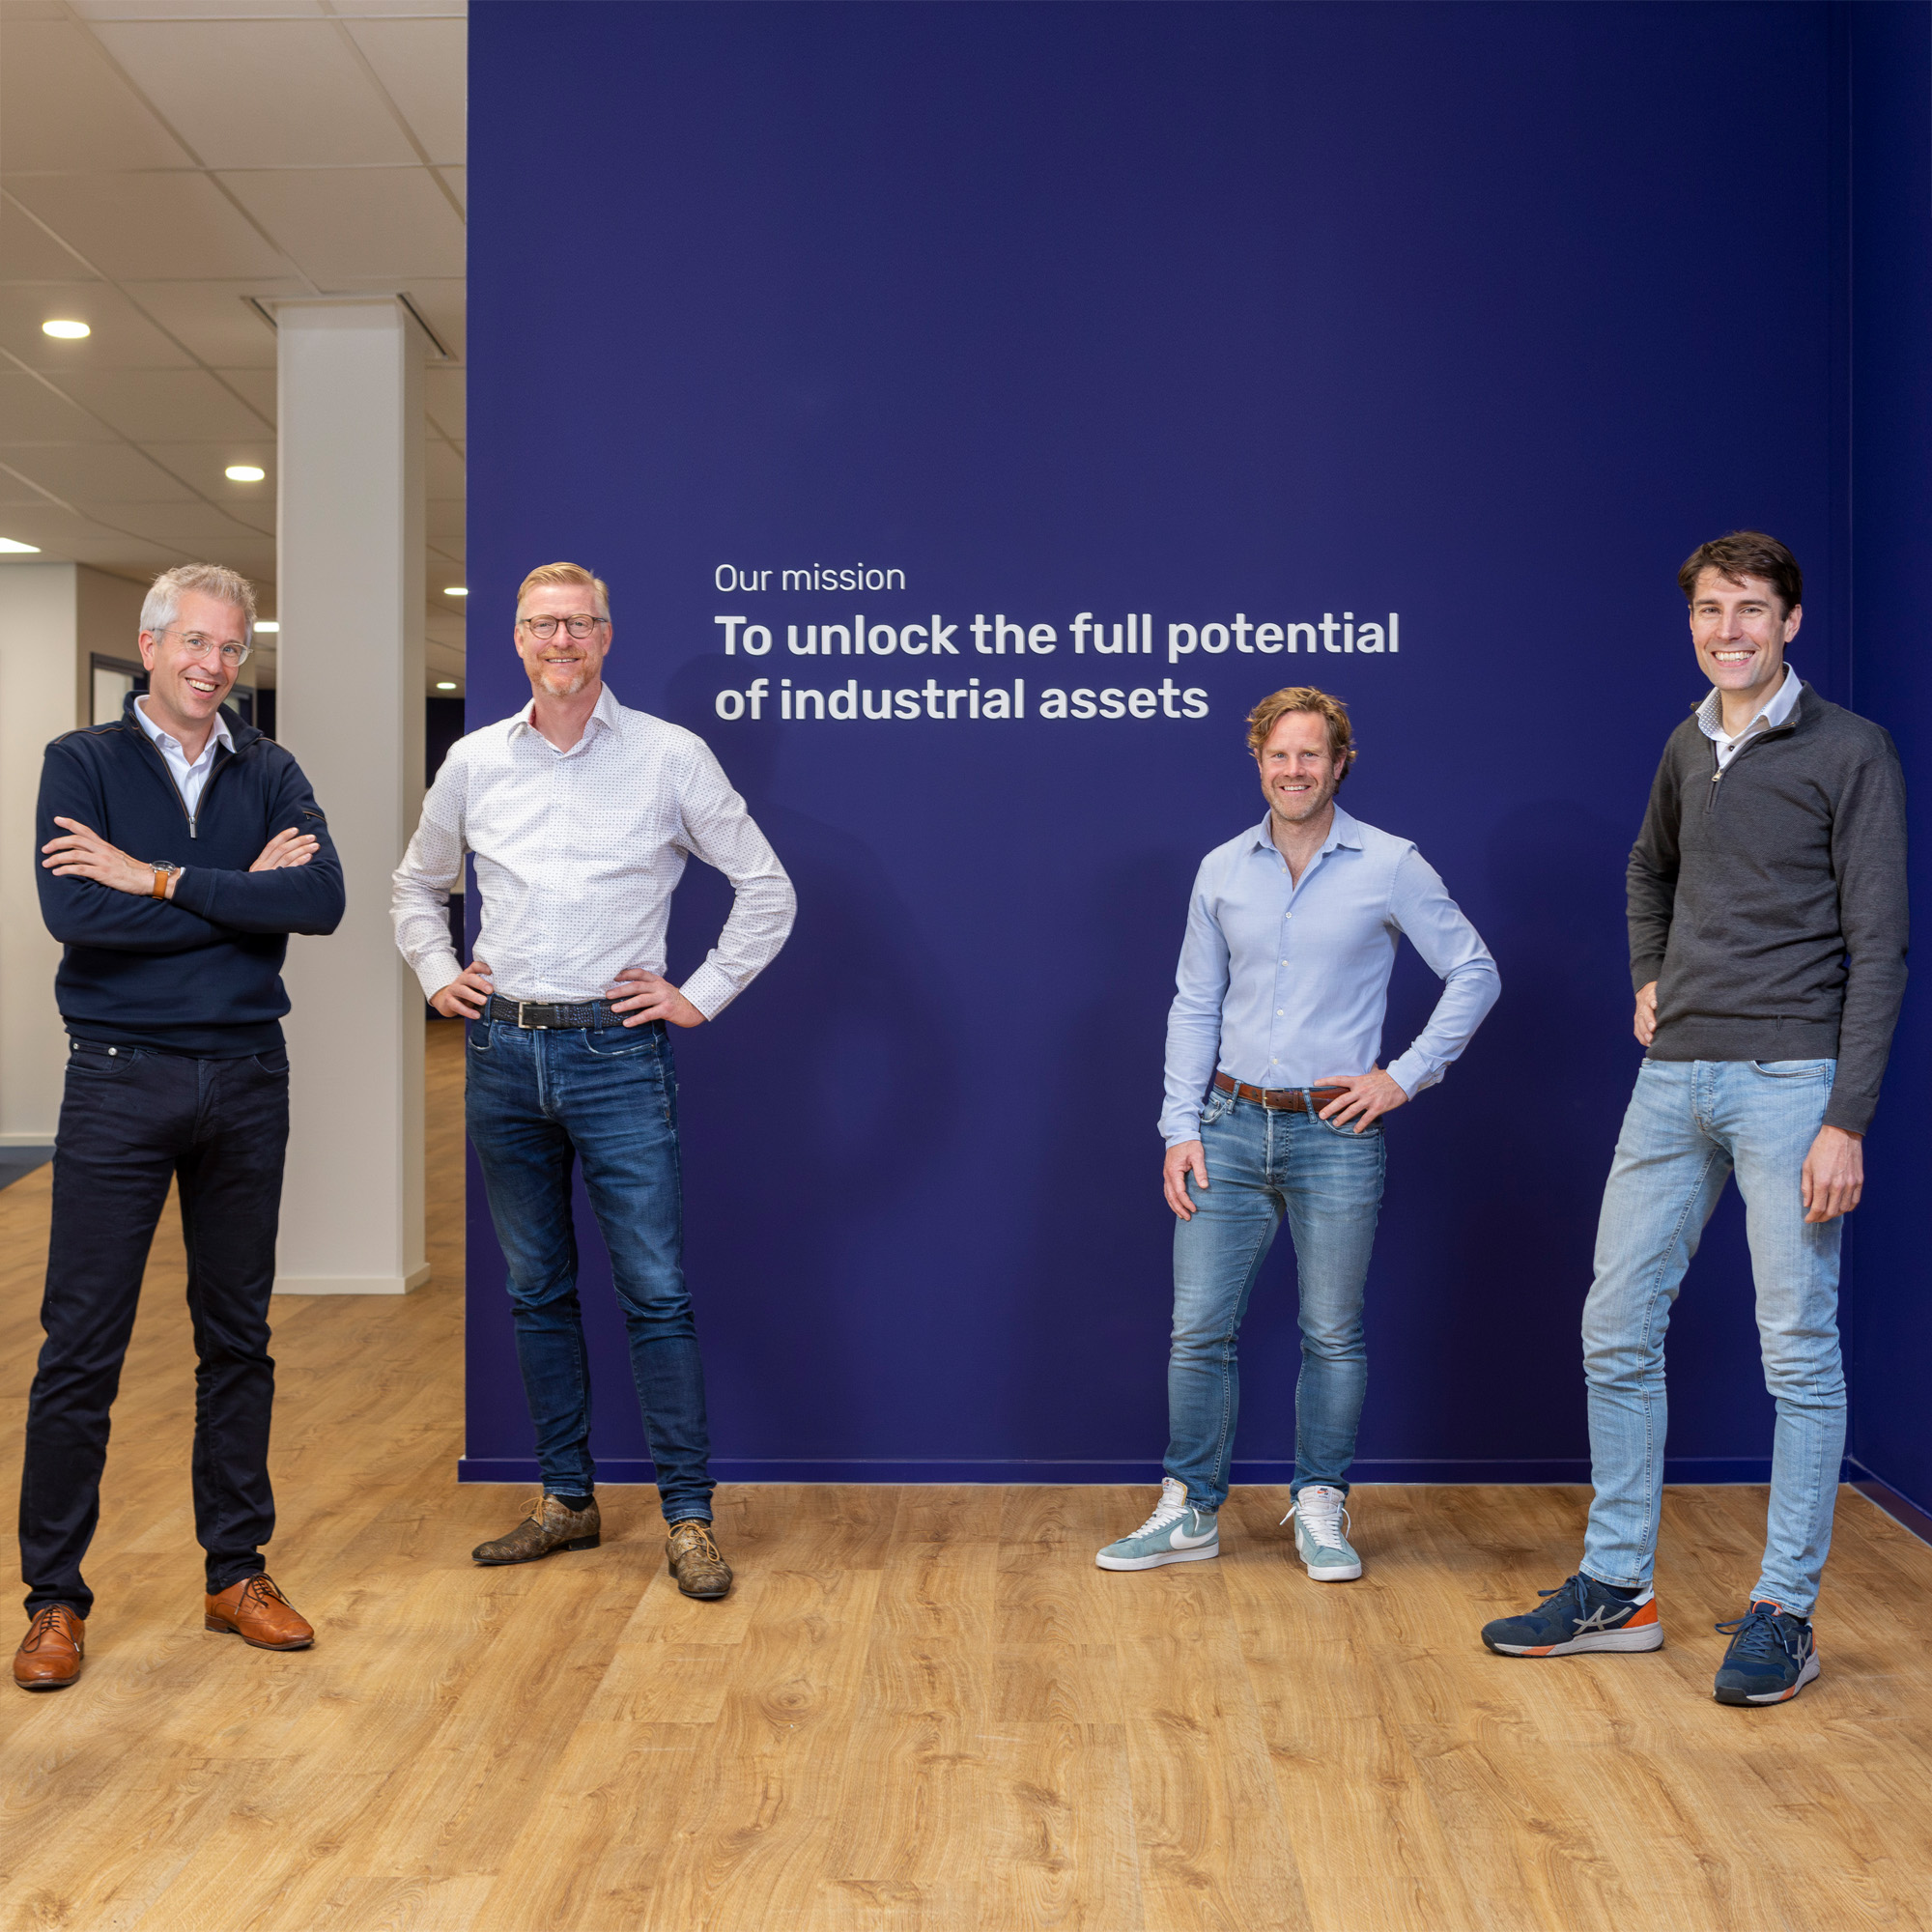 Left to right: Joost Lasschuit (CEO), Arie Rolloos (Sales), Martijn Handels (CTO), Bram Masselink (COO)